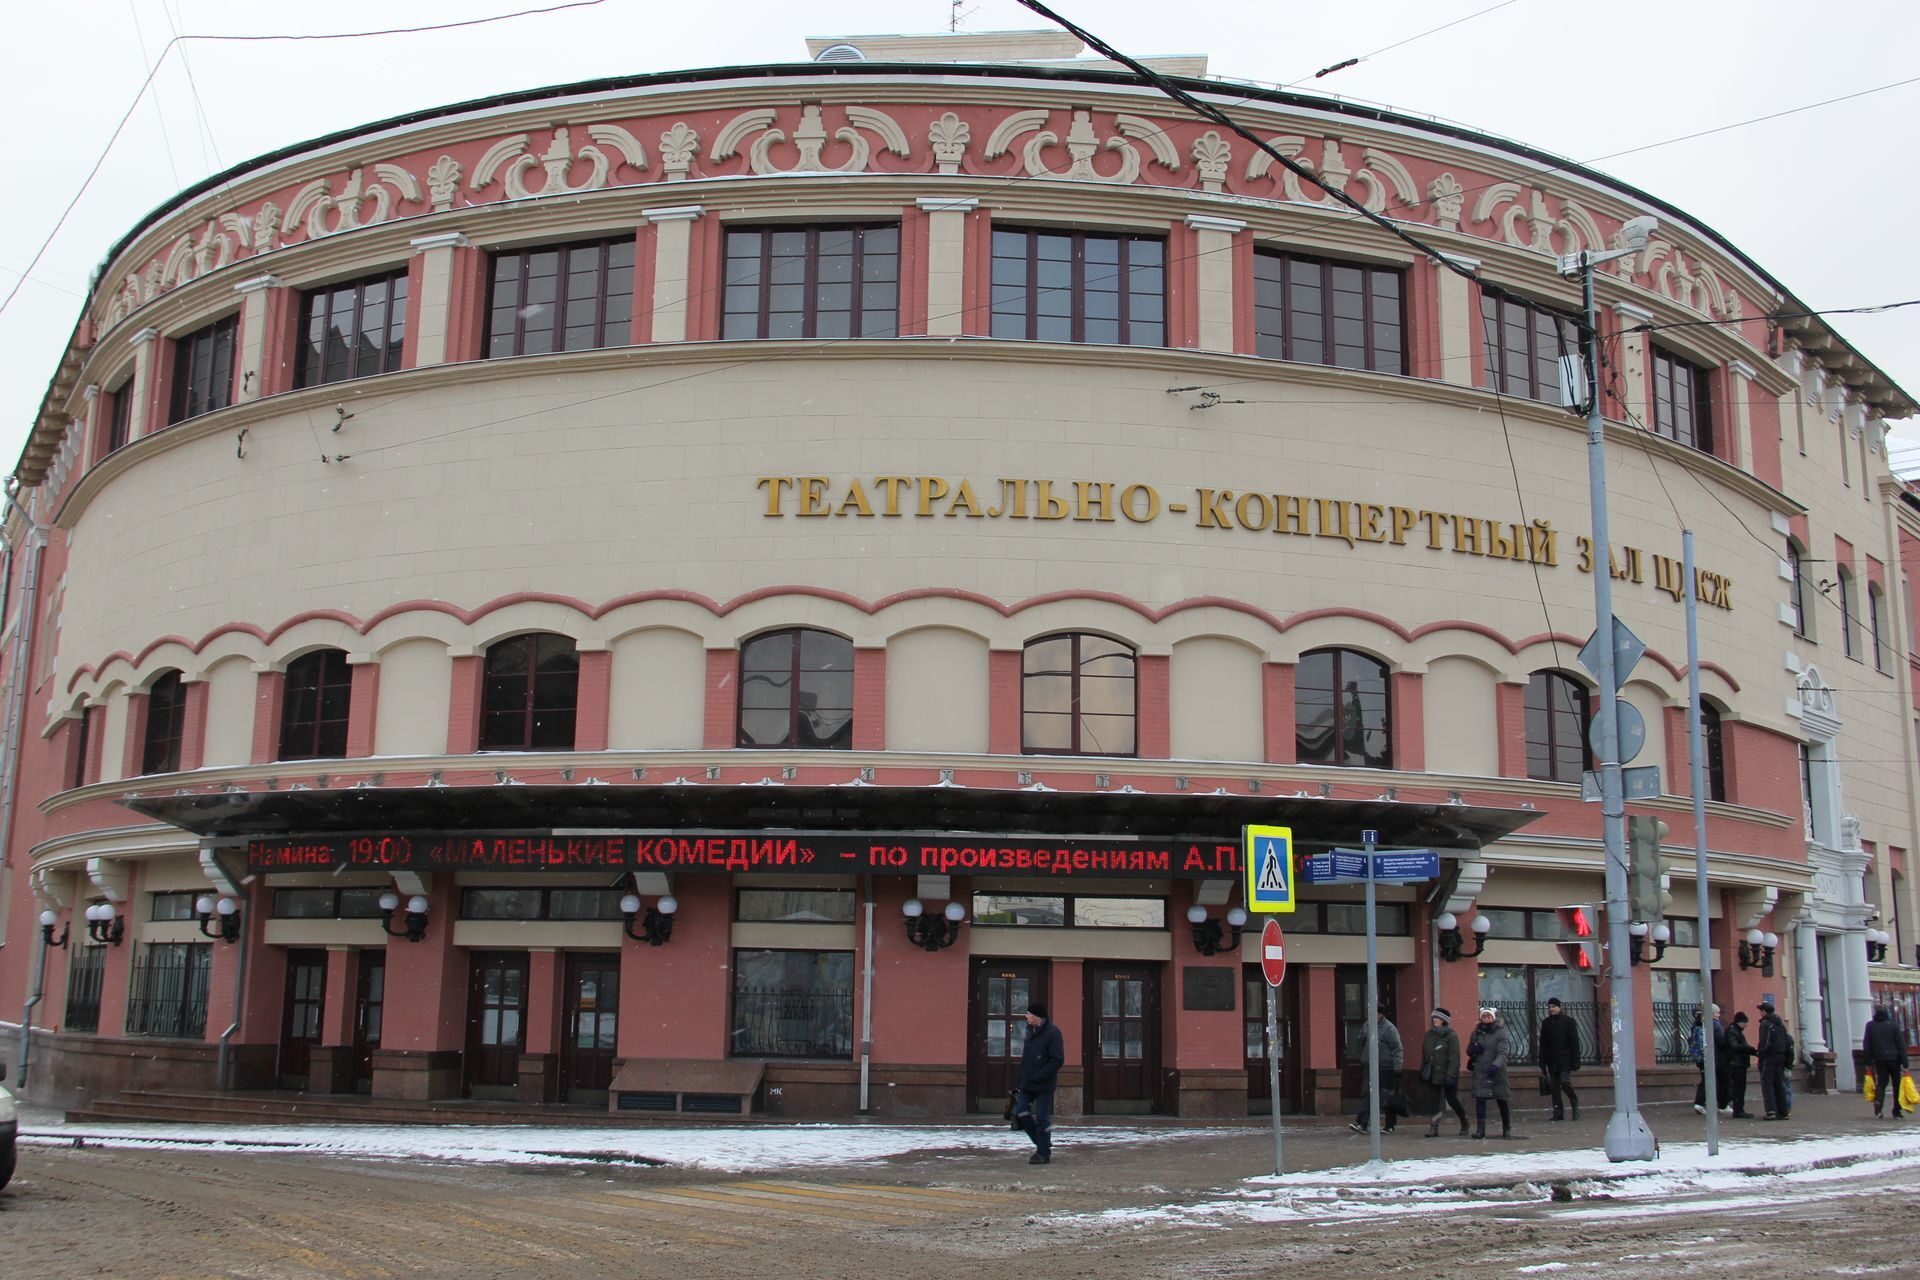 Метро комсомольская театр